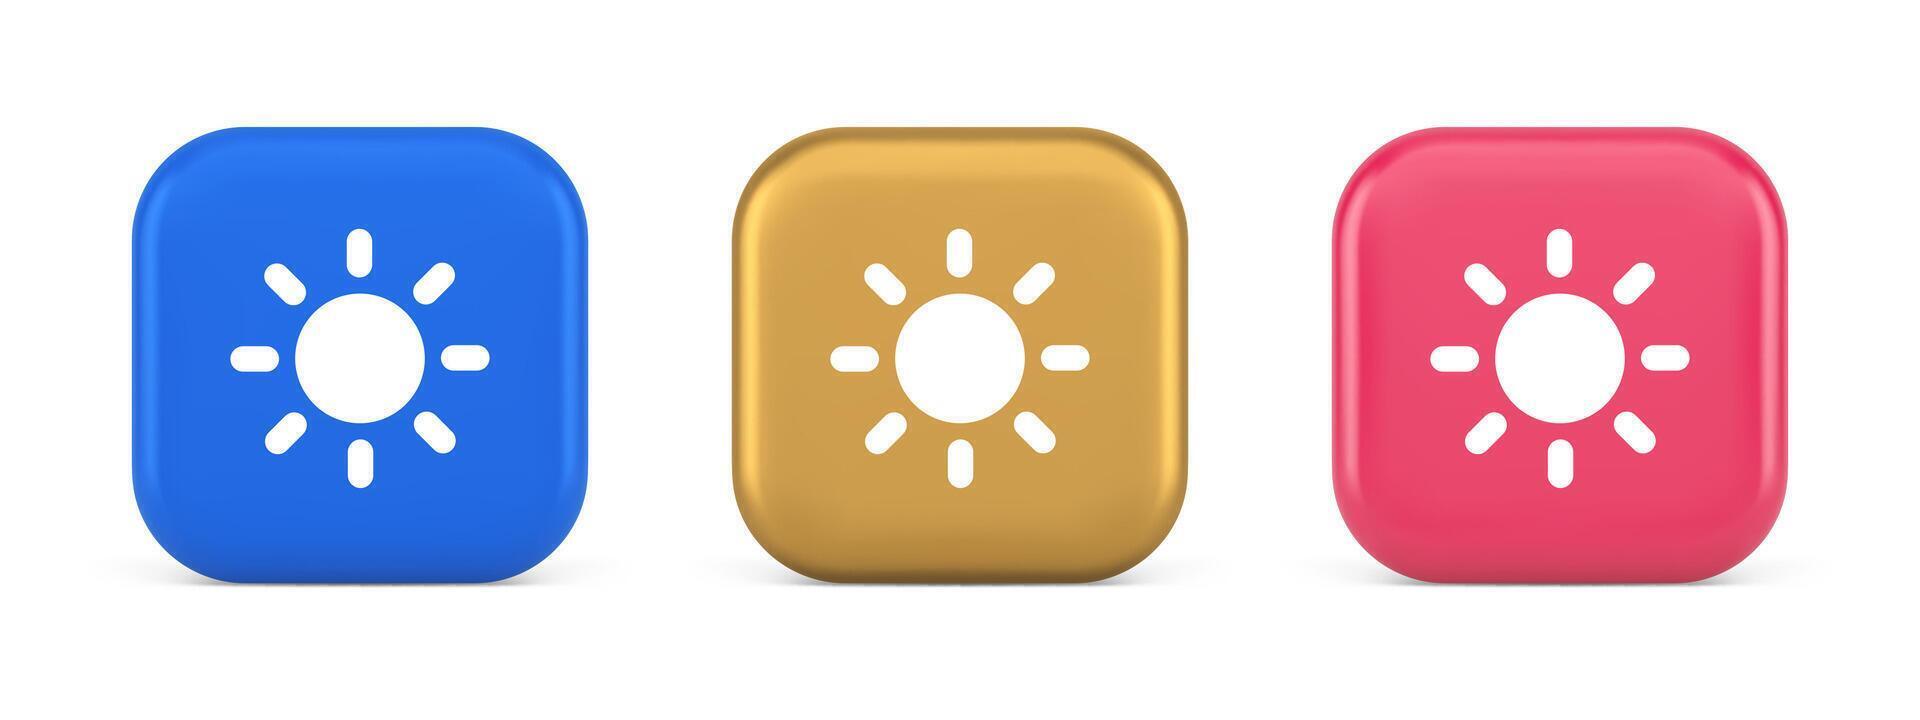 luminosità pulsante sole leggero caldo freddo contrasto digitale interfaccia 3d realistico icona vettore